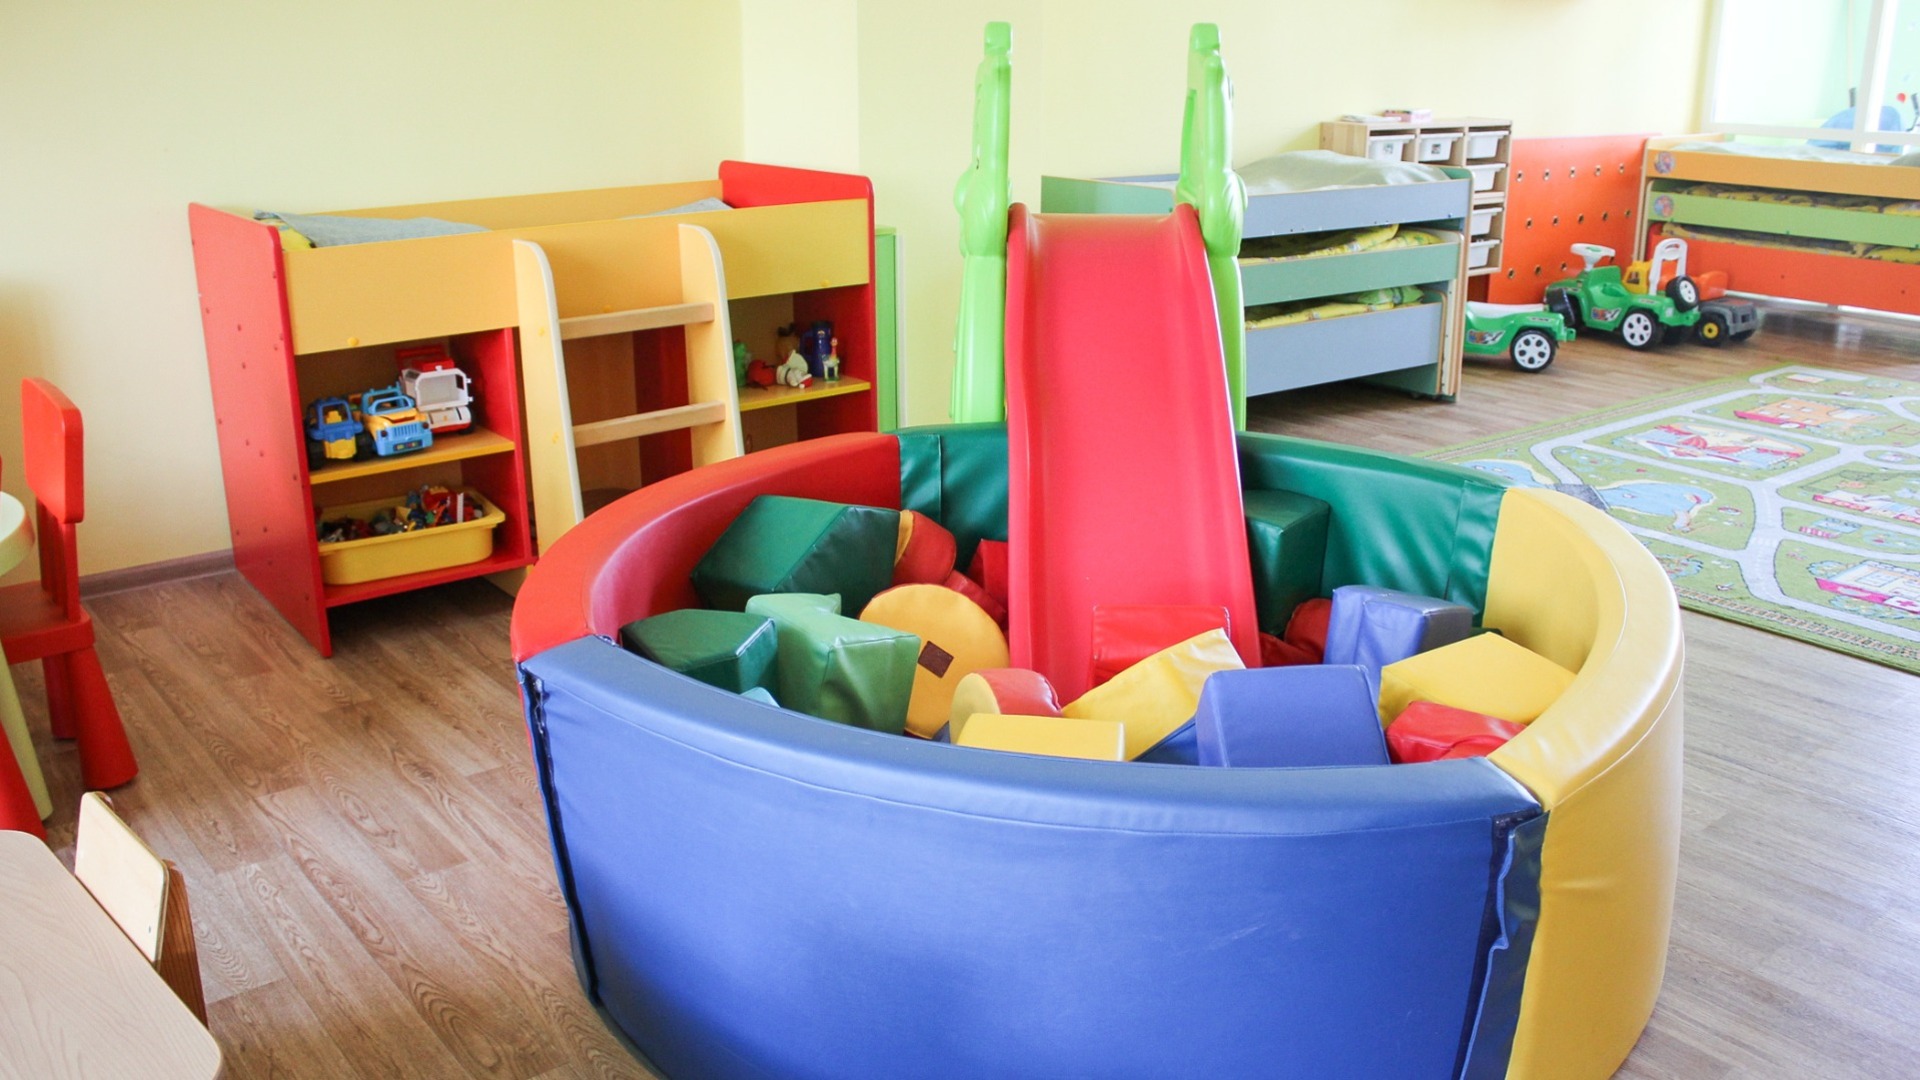 Пестречинский район прокомментировал нехватку мест в детских садах